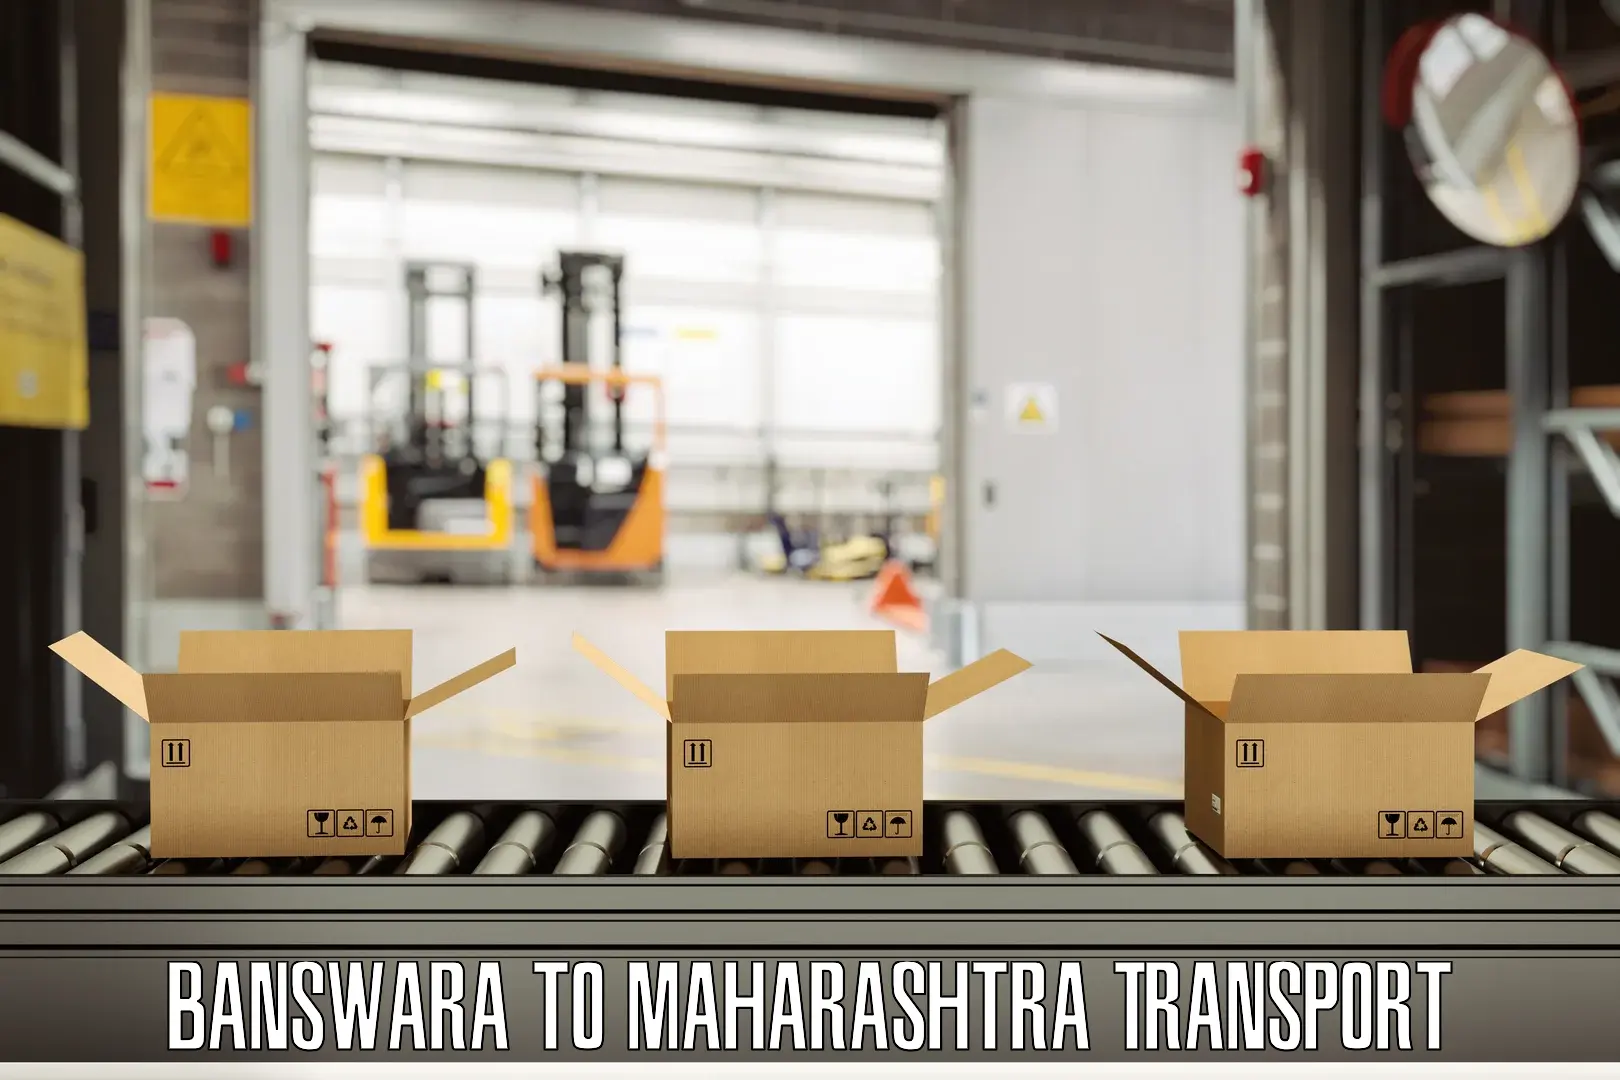 Nearby transport service Banswara to Maharashtra